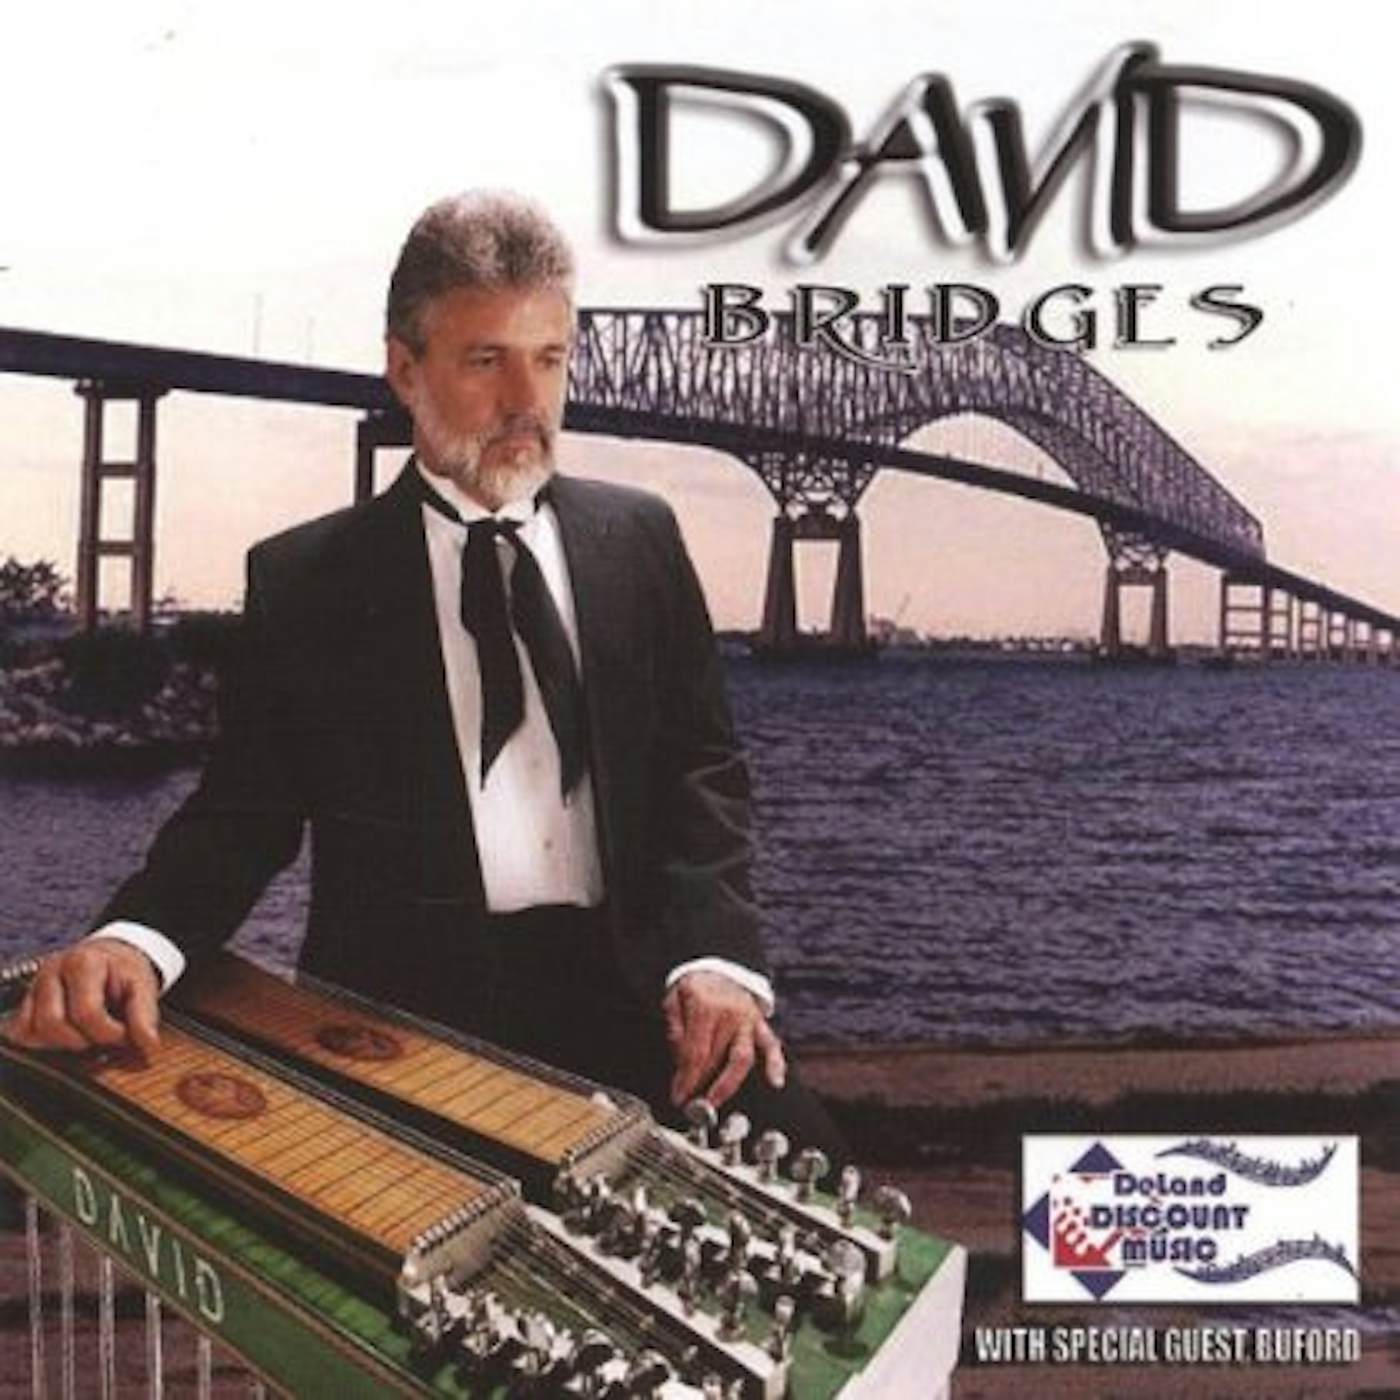 David BRIDGES CD